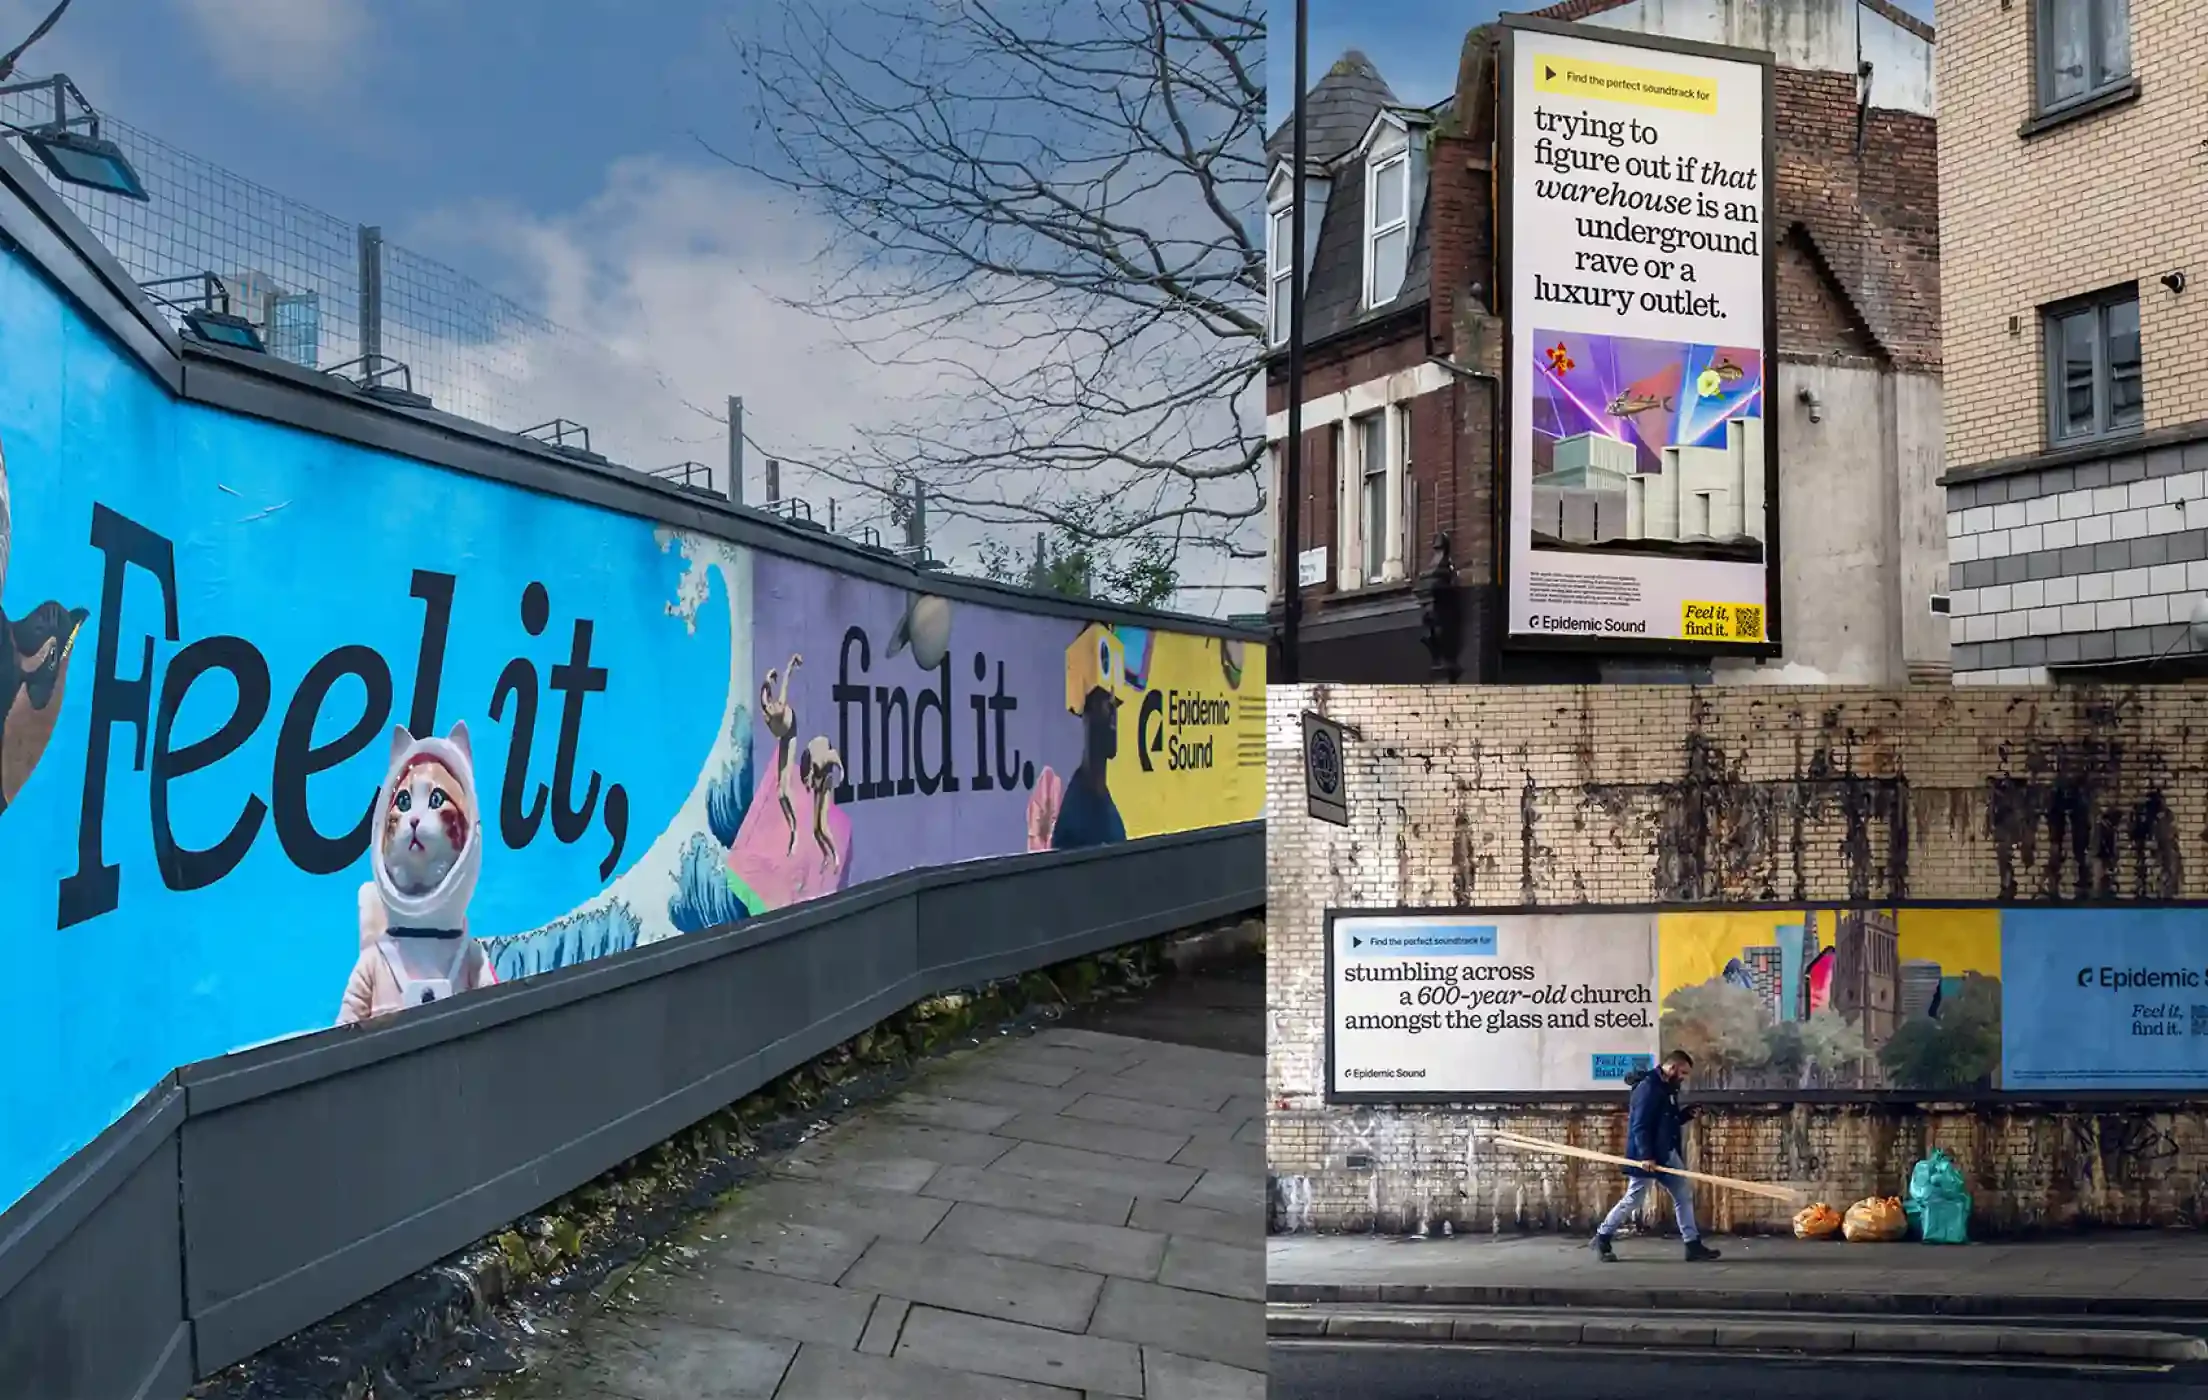 Collage composé d’exemples de la campagne de la marque dans les rues de Londres